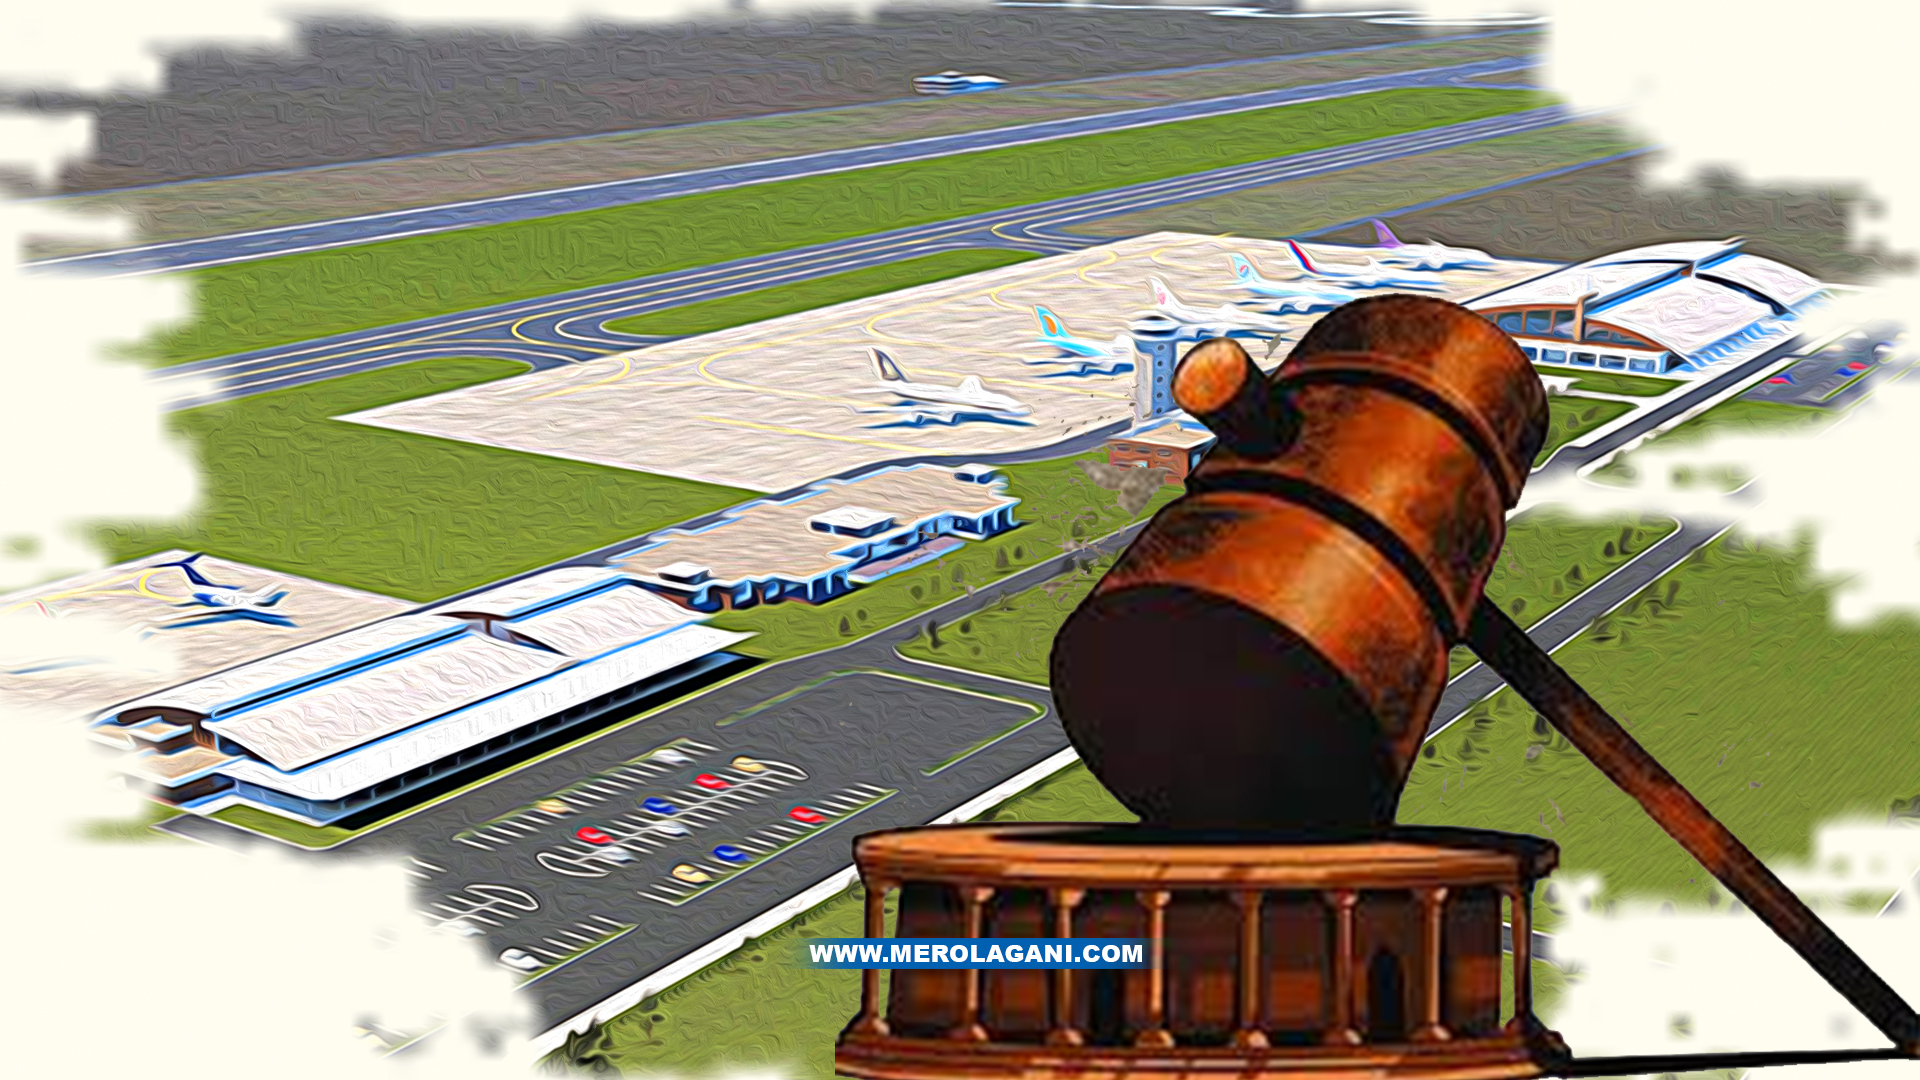 सर्वोच्च भन्छ निजगढ एयरपोर्ट नबनाऊ, देशको लागि घातक फैसला आएको पर्यटनकर्मीको प्रतिक्रिया